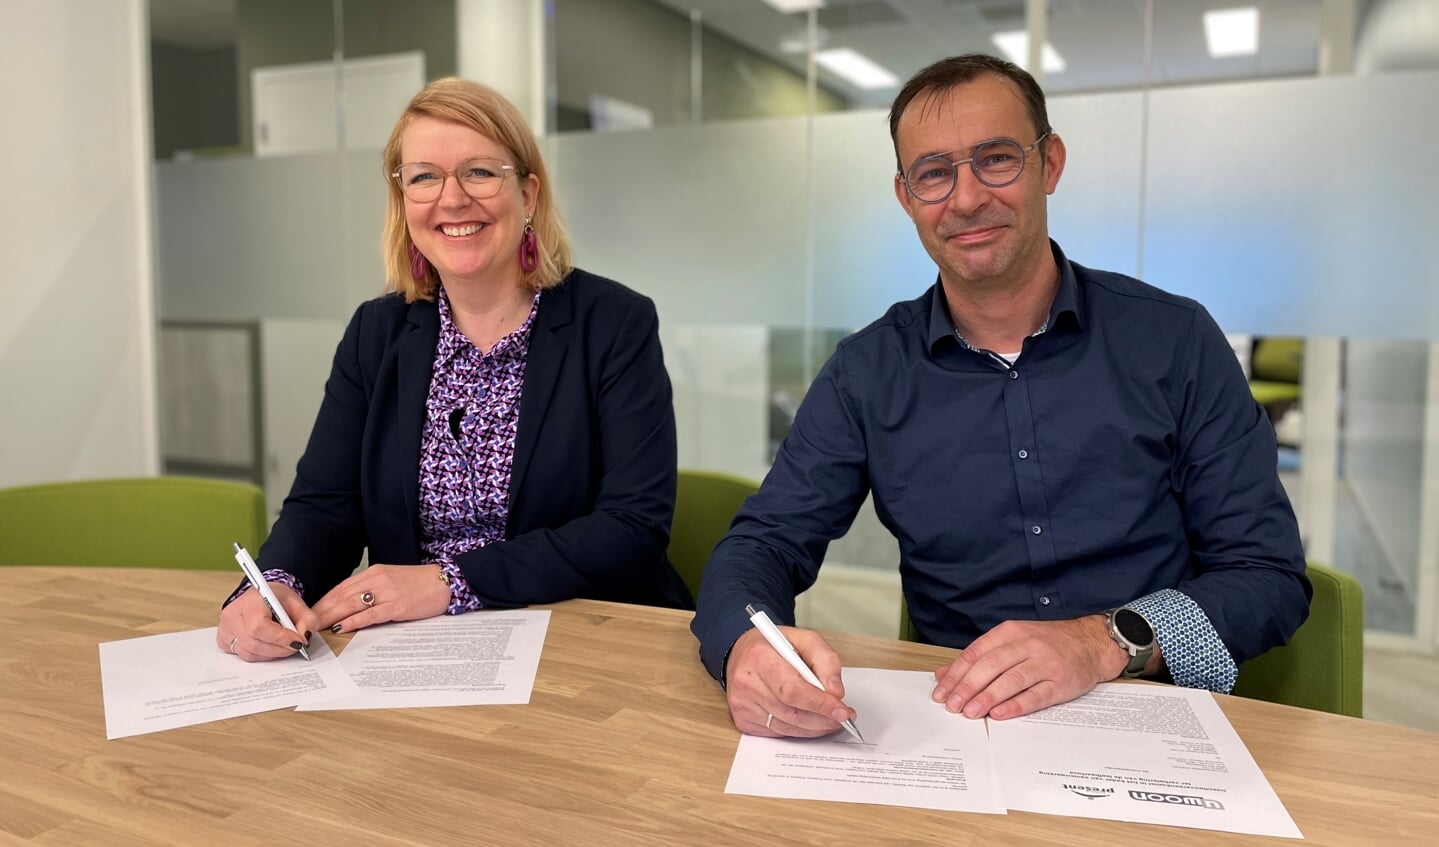 Jan Hein Van Burken van Stichting Present Ermelo en Fleur Imming van UWOON ondertekenen de samenwerkingsovereenkomst voor leefbare buurten.